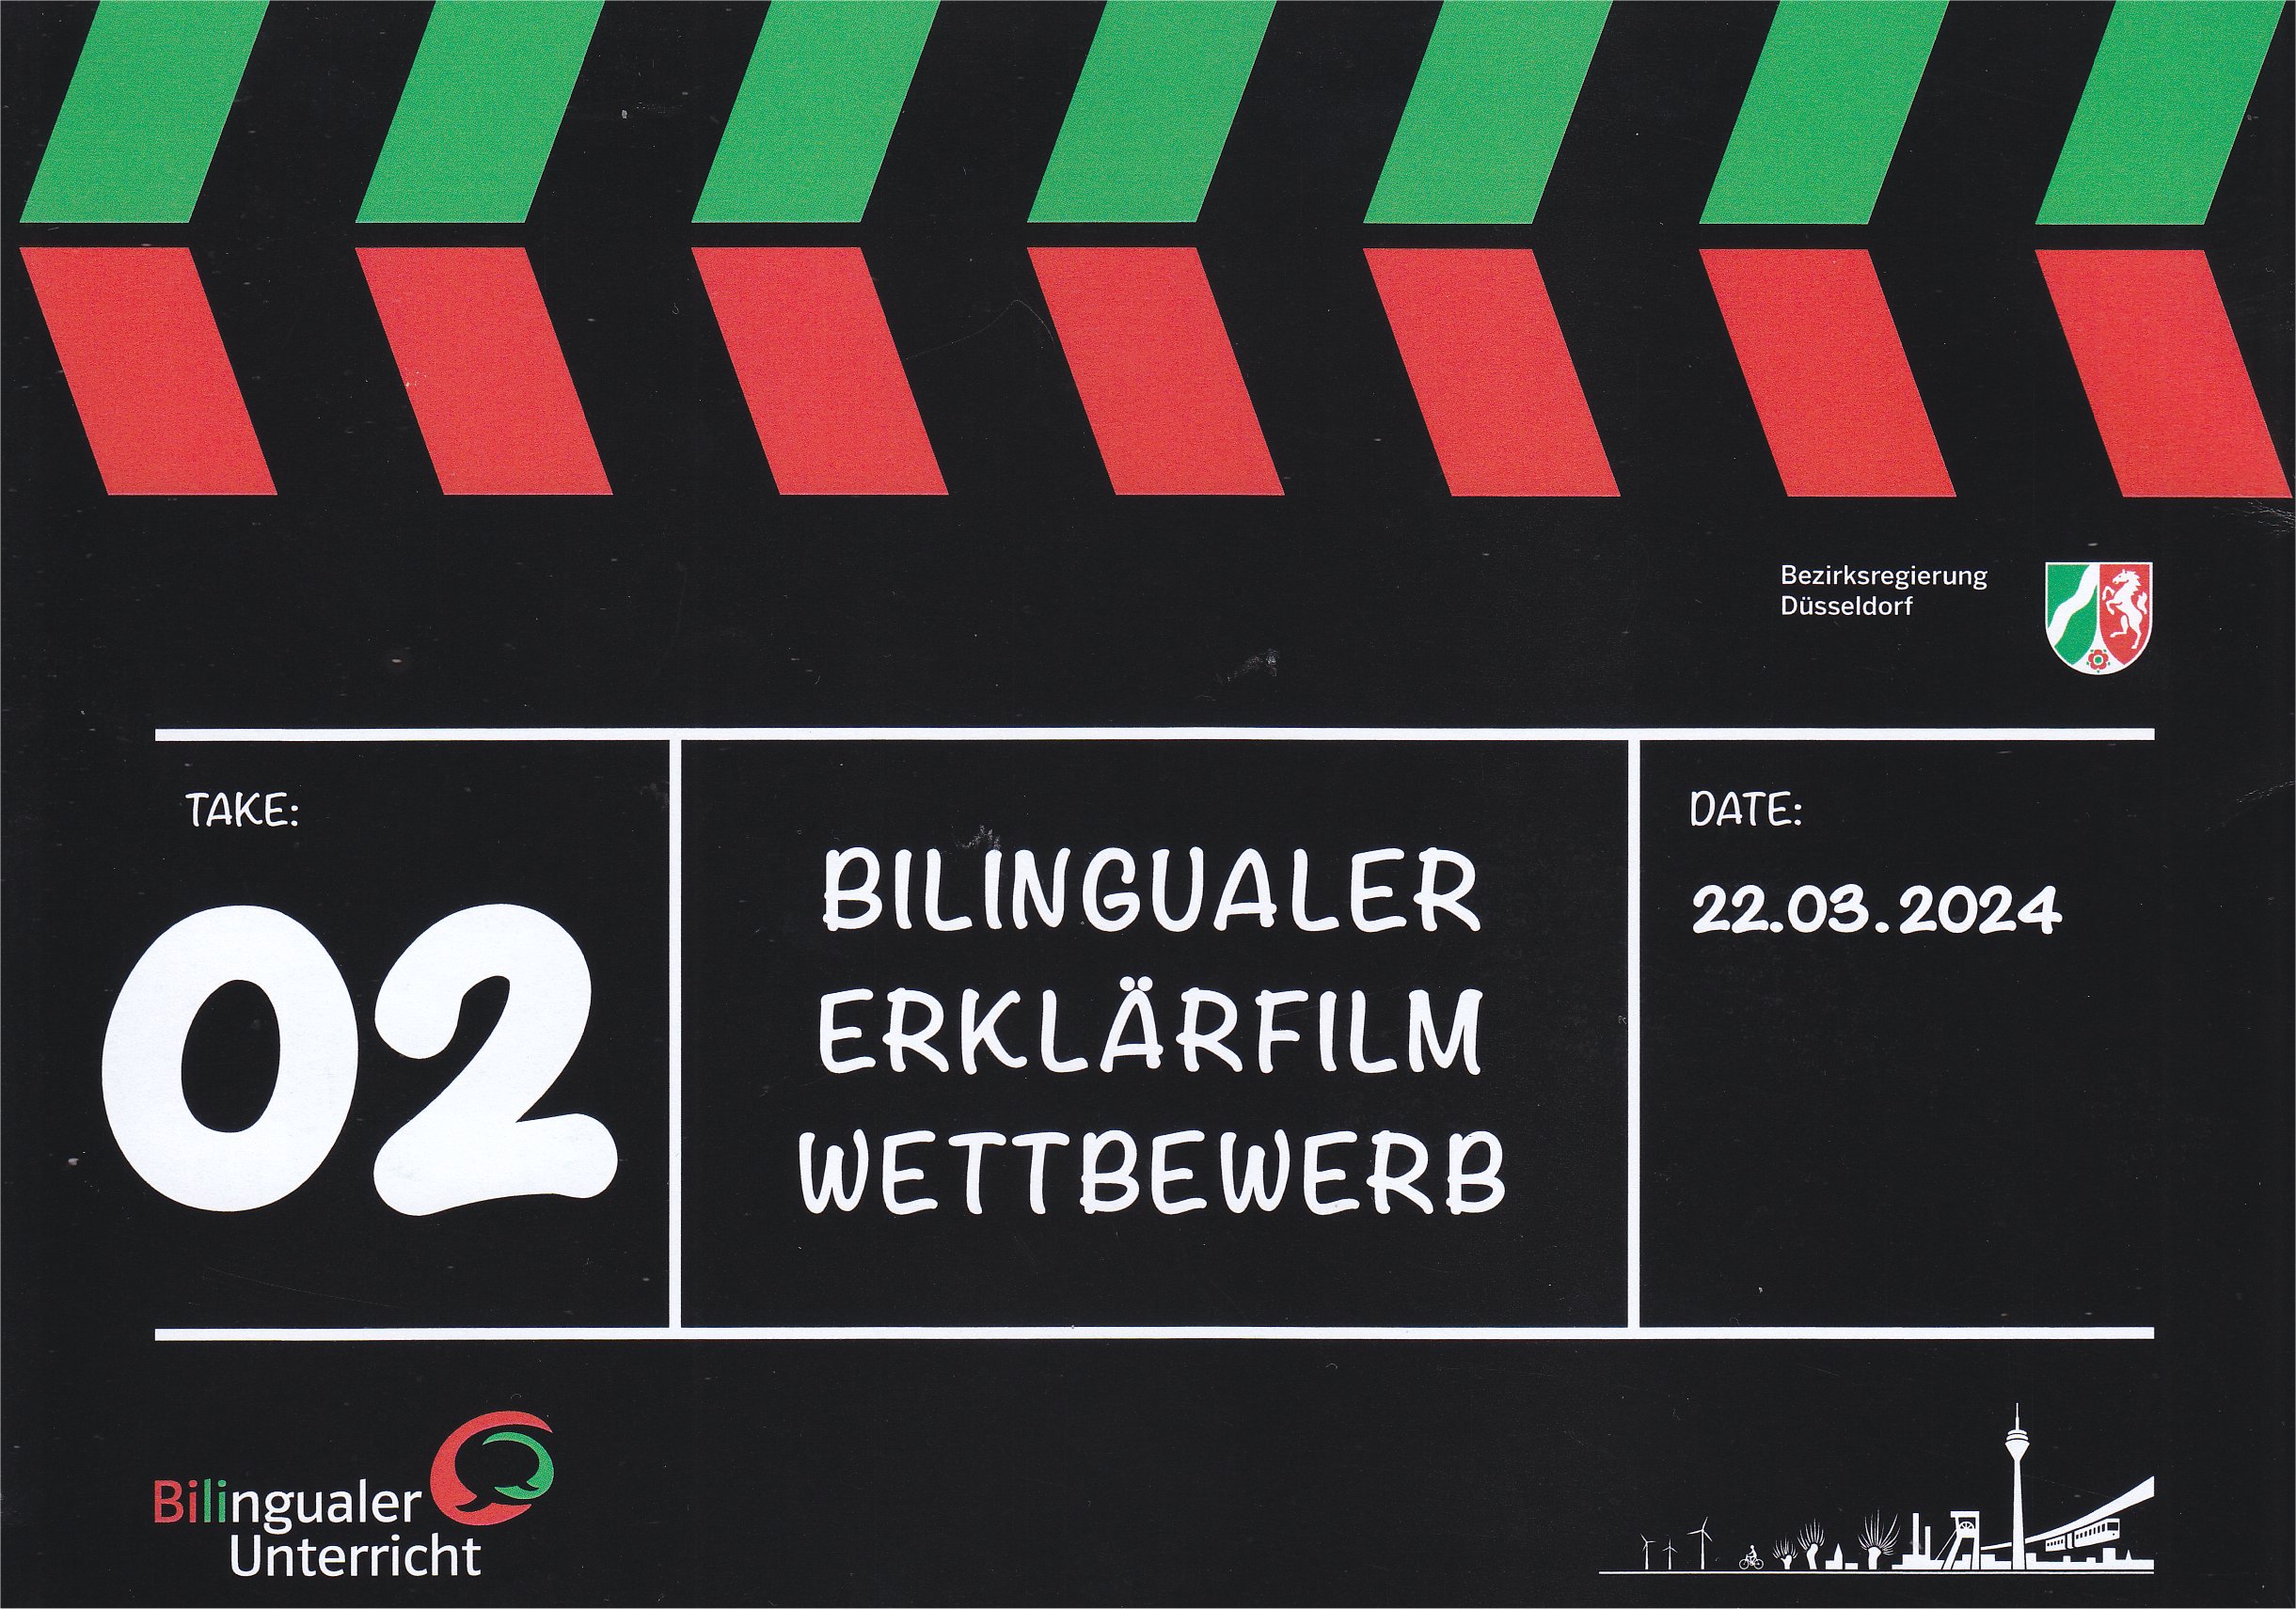 Nachrichtenbild: Die Klasse 8c nimmt am bilingualen Erklärfilmwettbewerb teil